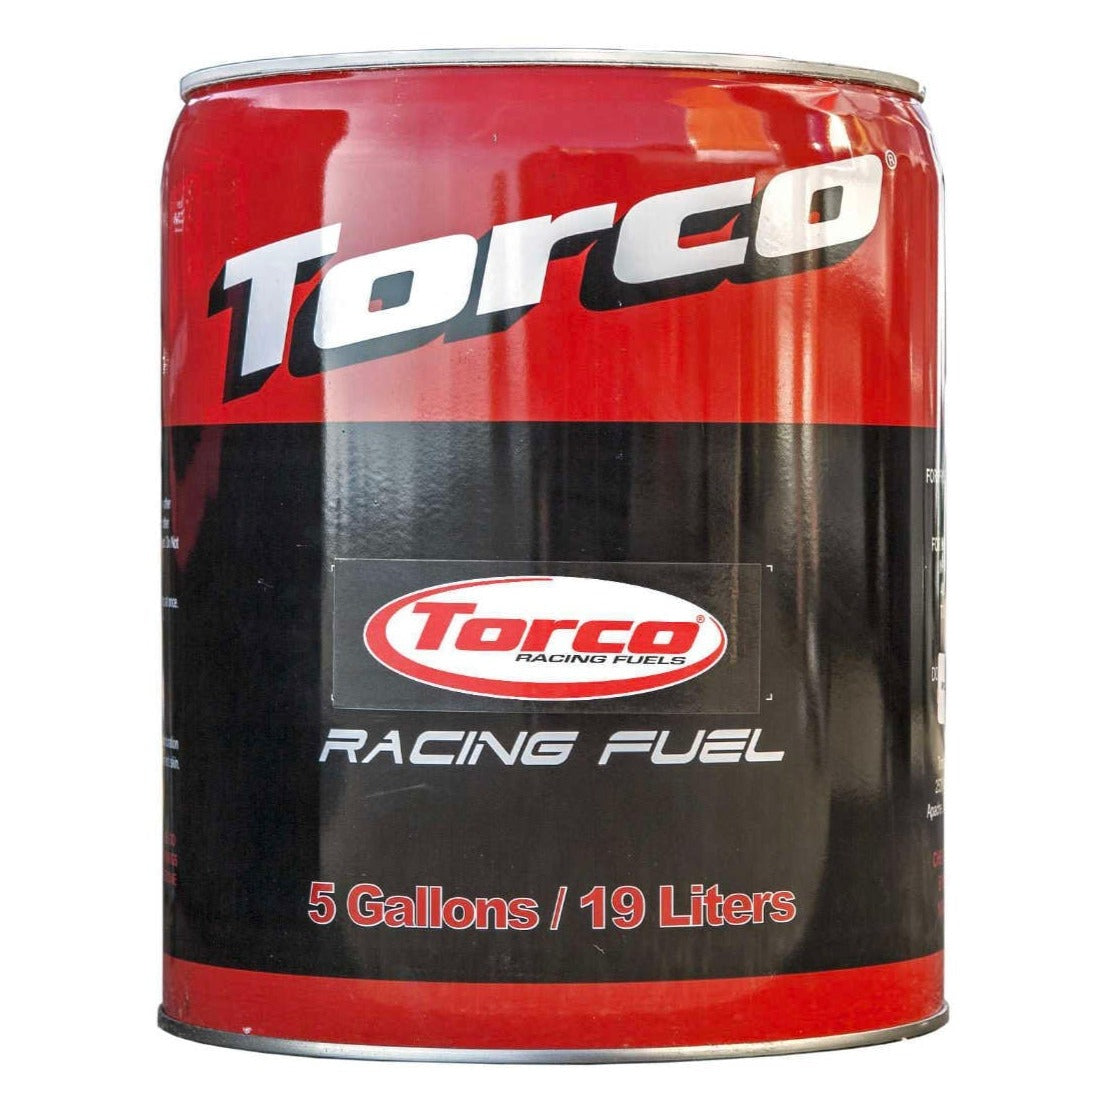 Torco Race Fuel 112 Leaded